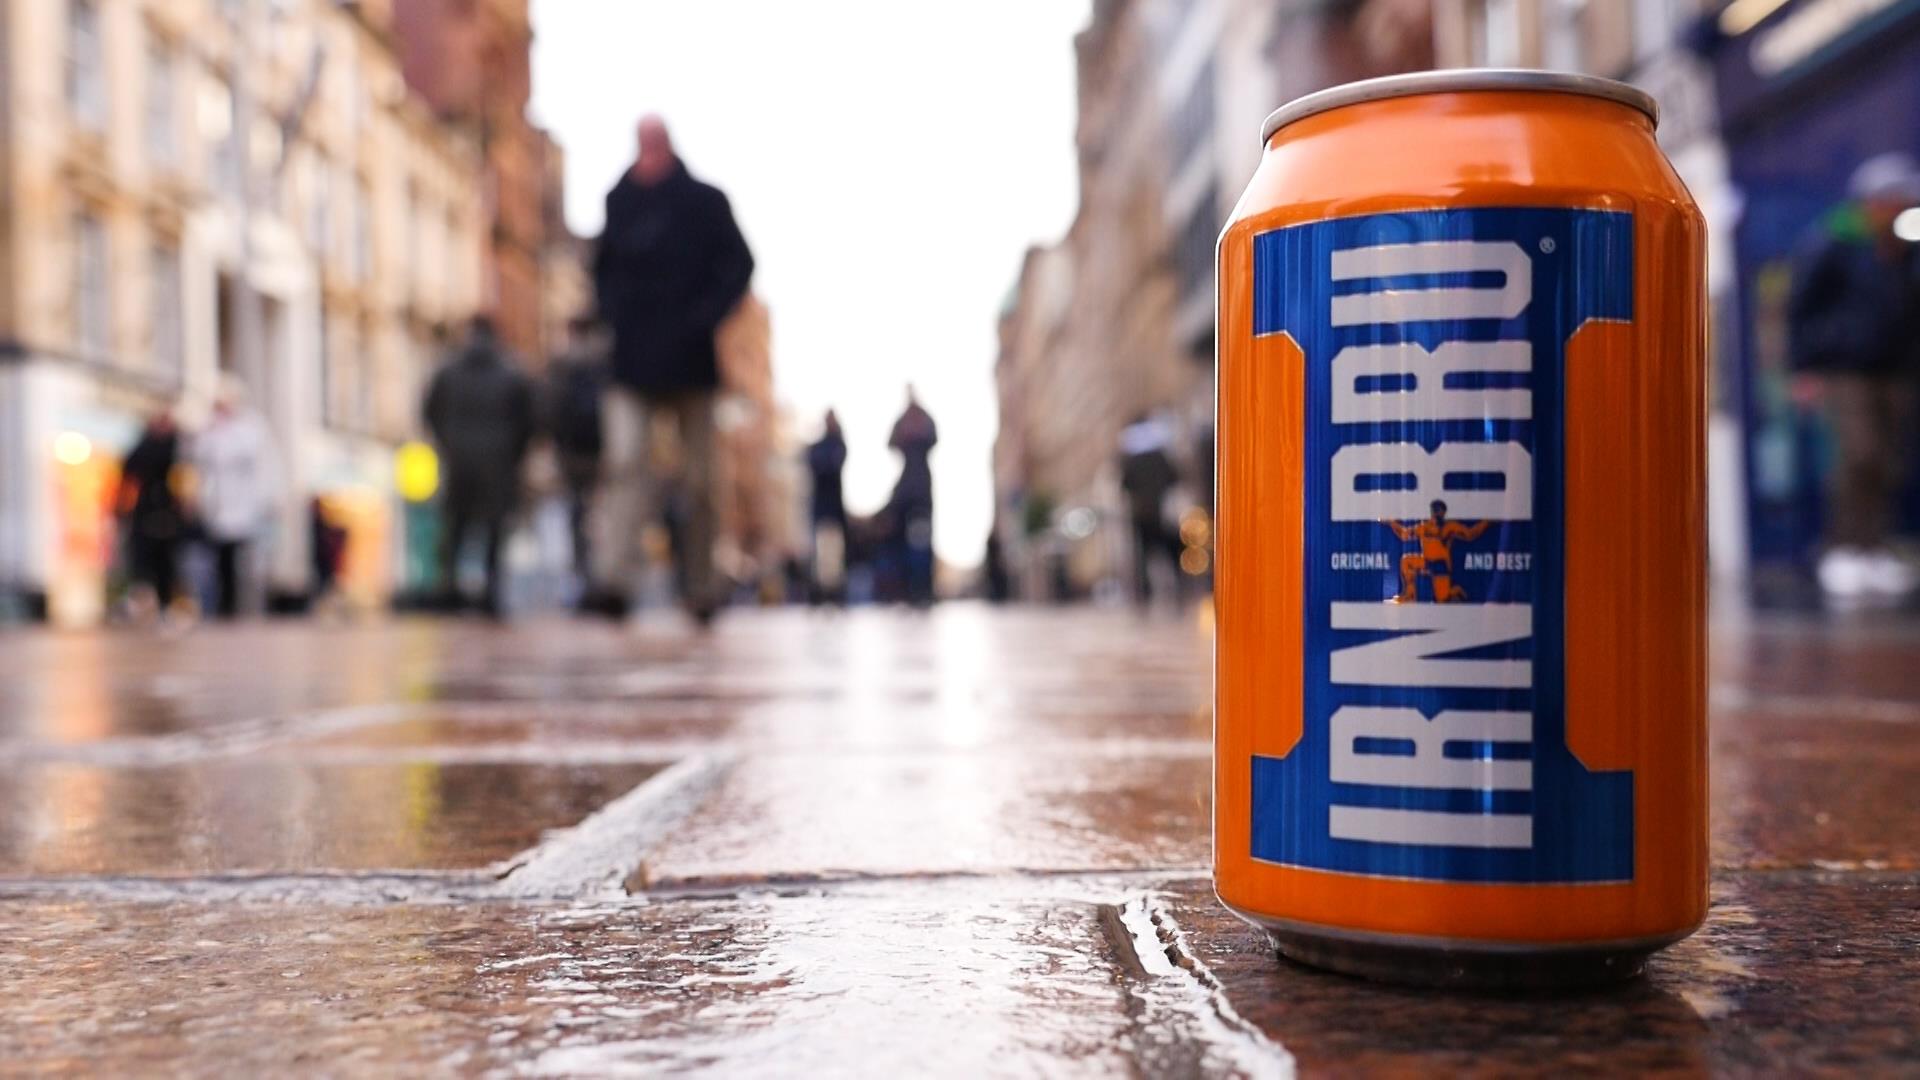 Has A New Recipe Ruined Scotland's Popular Irn Bru Soda?